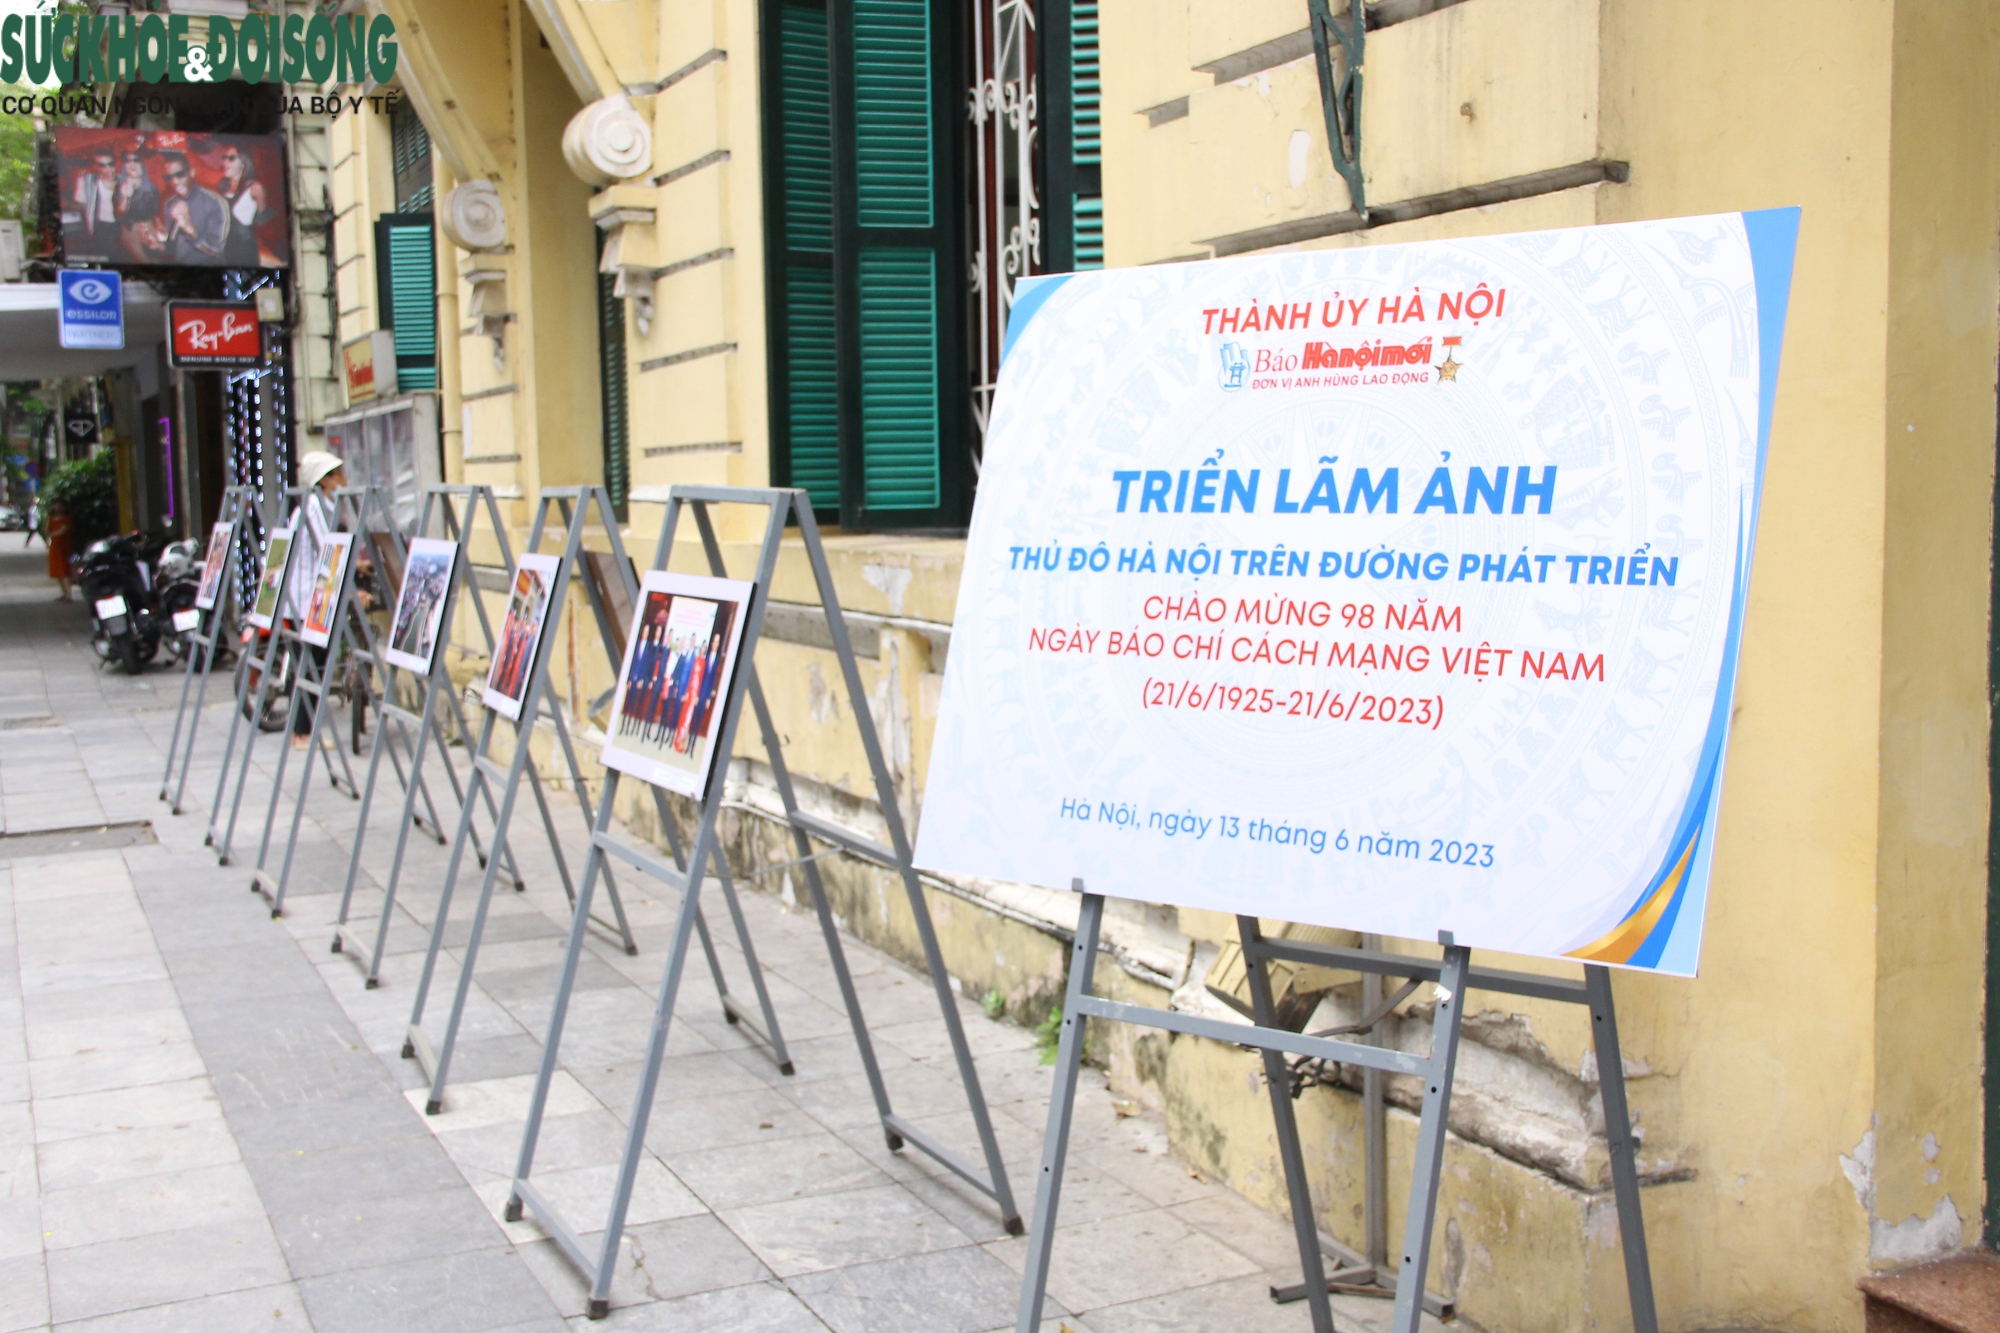 Triển lãm ảnh "Thủ đô Hà Nội trên đường phát triển" đang được diễn ra tại khu vực phố đi bộ Hồ Gươm (phố Lê Thái Tổ, Hàng Trống, Hoàn Kiếm, Hà Nội).